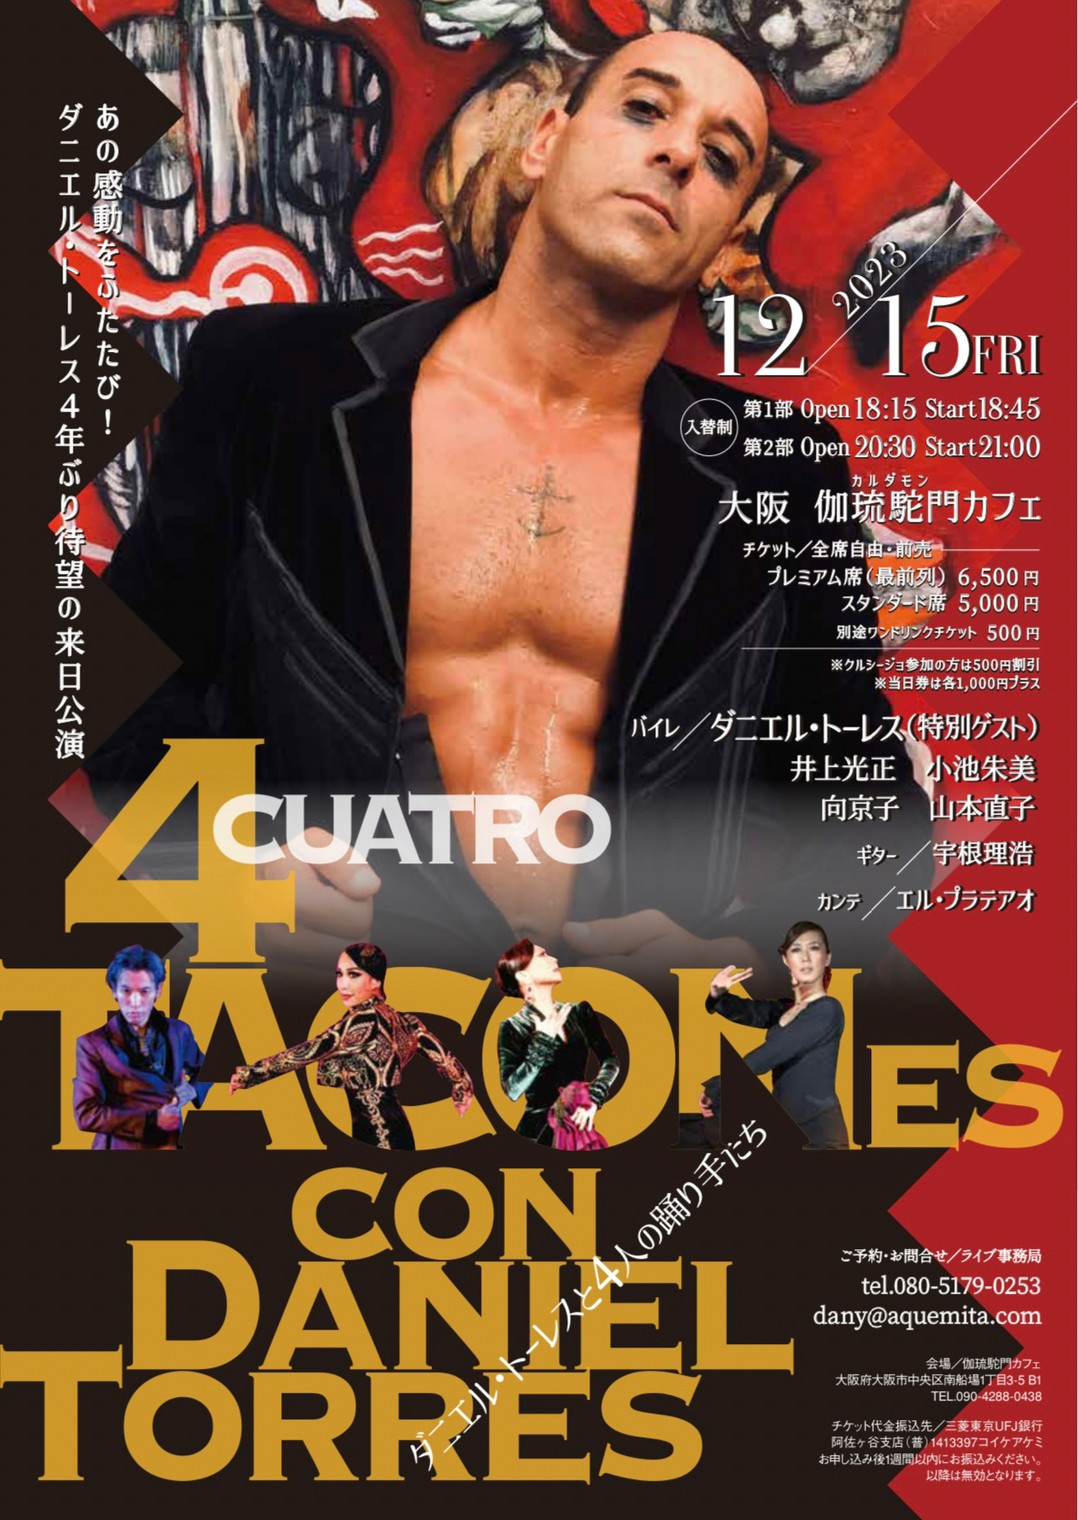 【出演】2023年12月15日(金)「Cuatro Tacones con Daniel Torres 〜ダニエル・トーレスと4人の踊り手たち〜」に出演します。